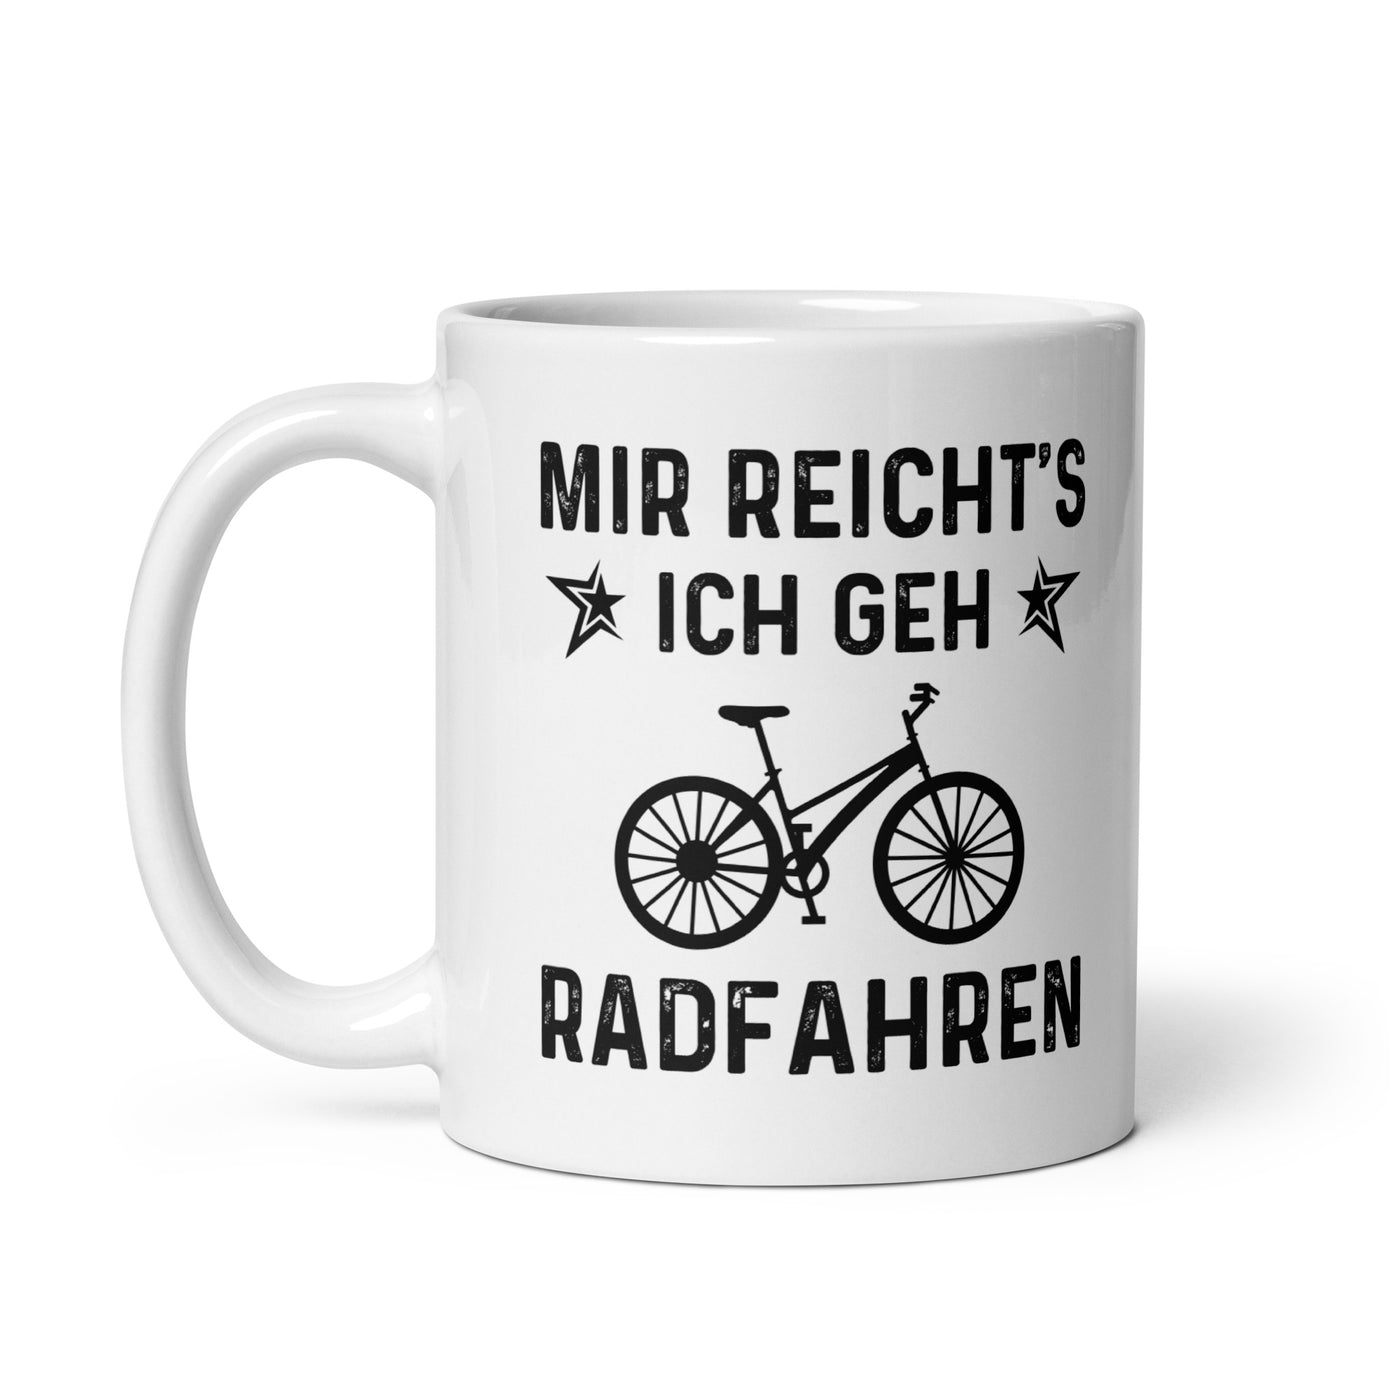 Mir Reicht'S Ich Gen Radfahren - Tasse fahrrad 11oz